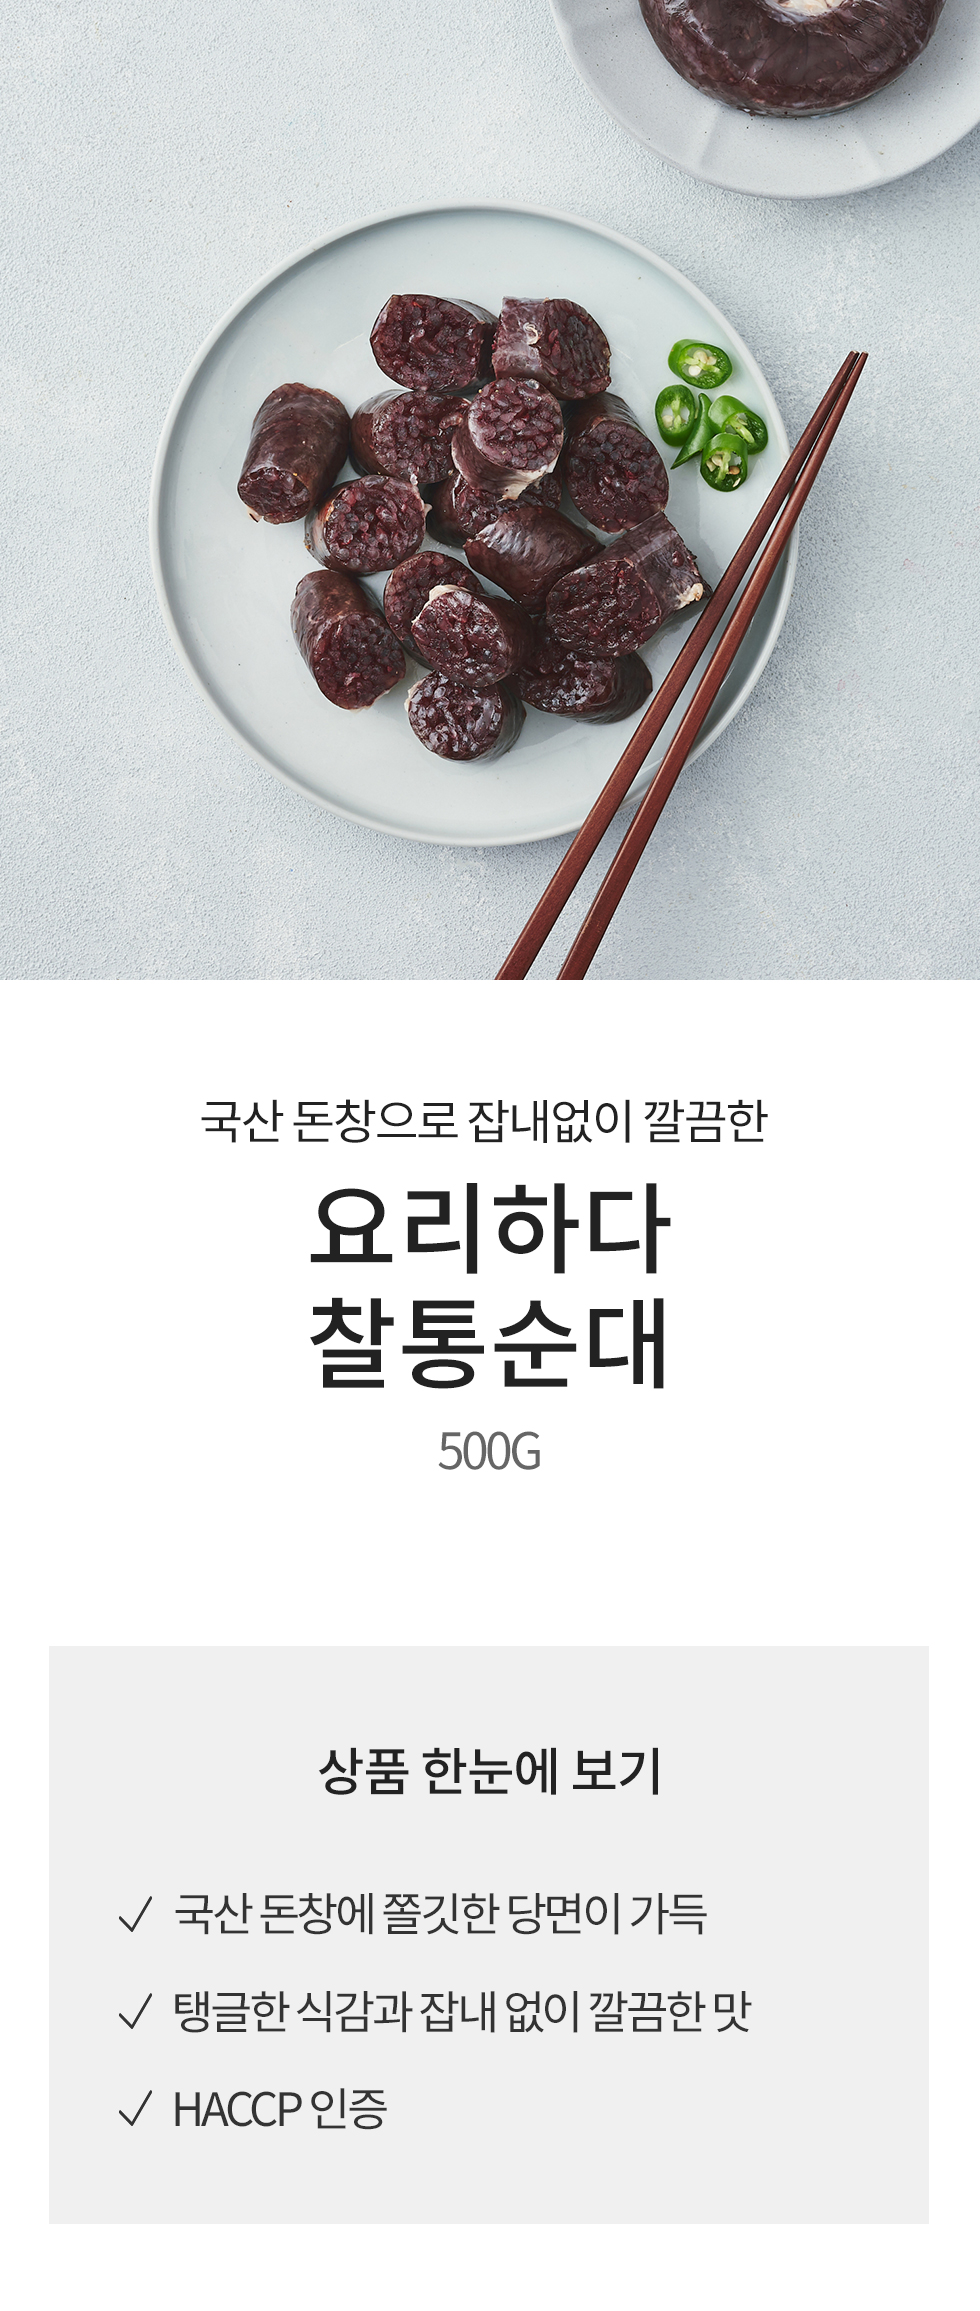 韓國食品-[Yorihada] 全條血腸 500g